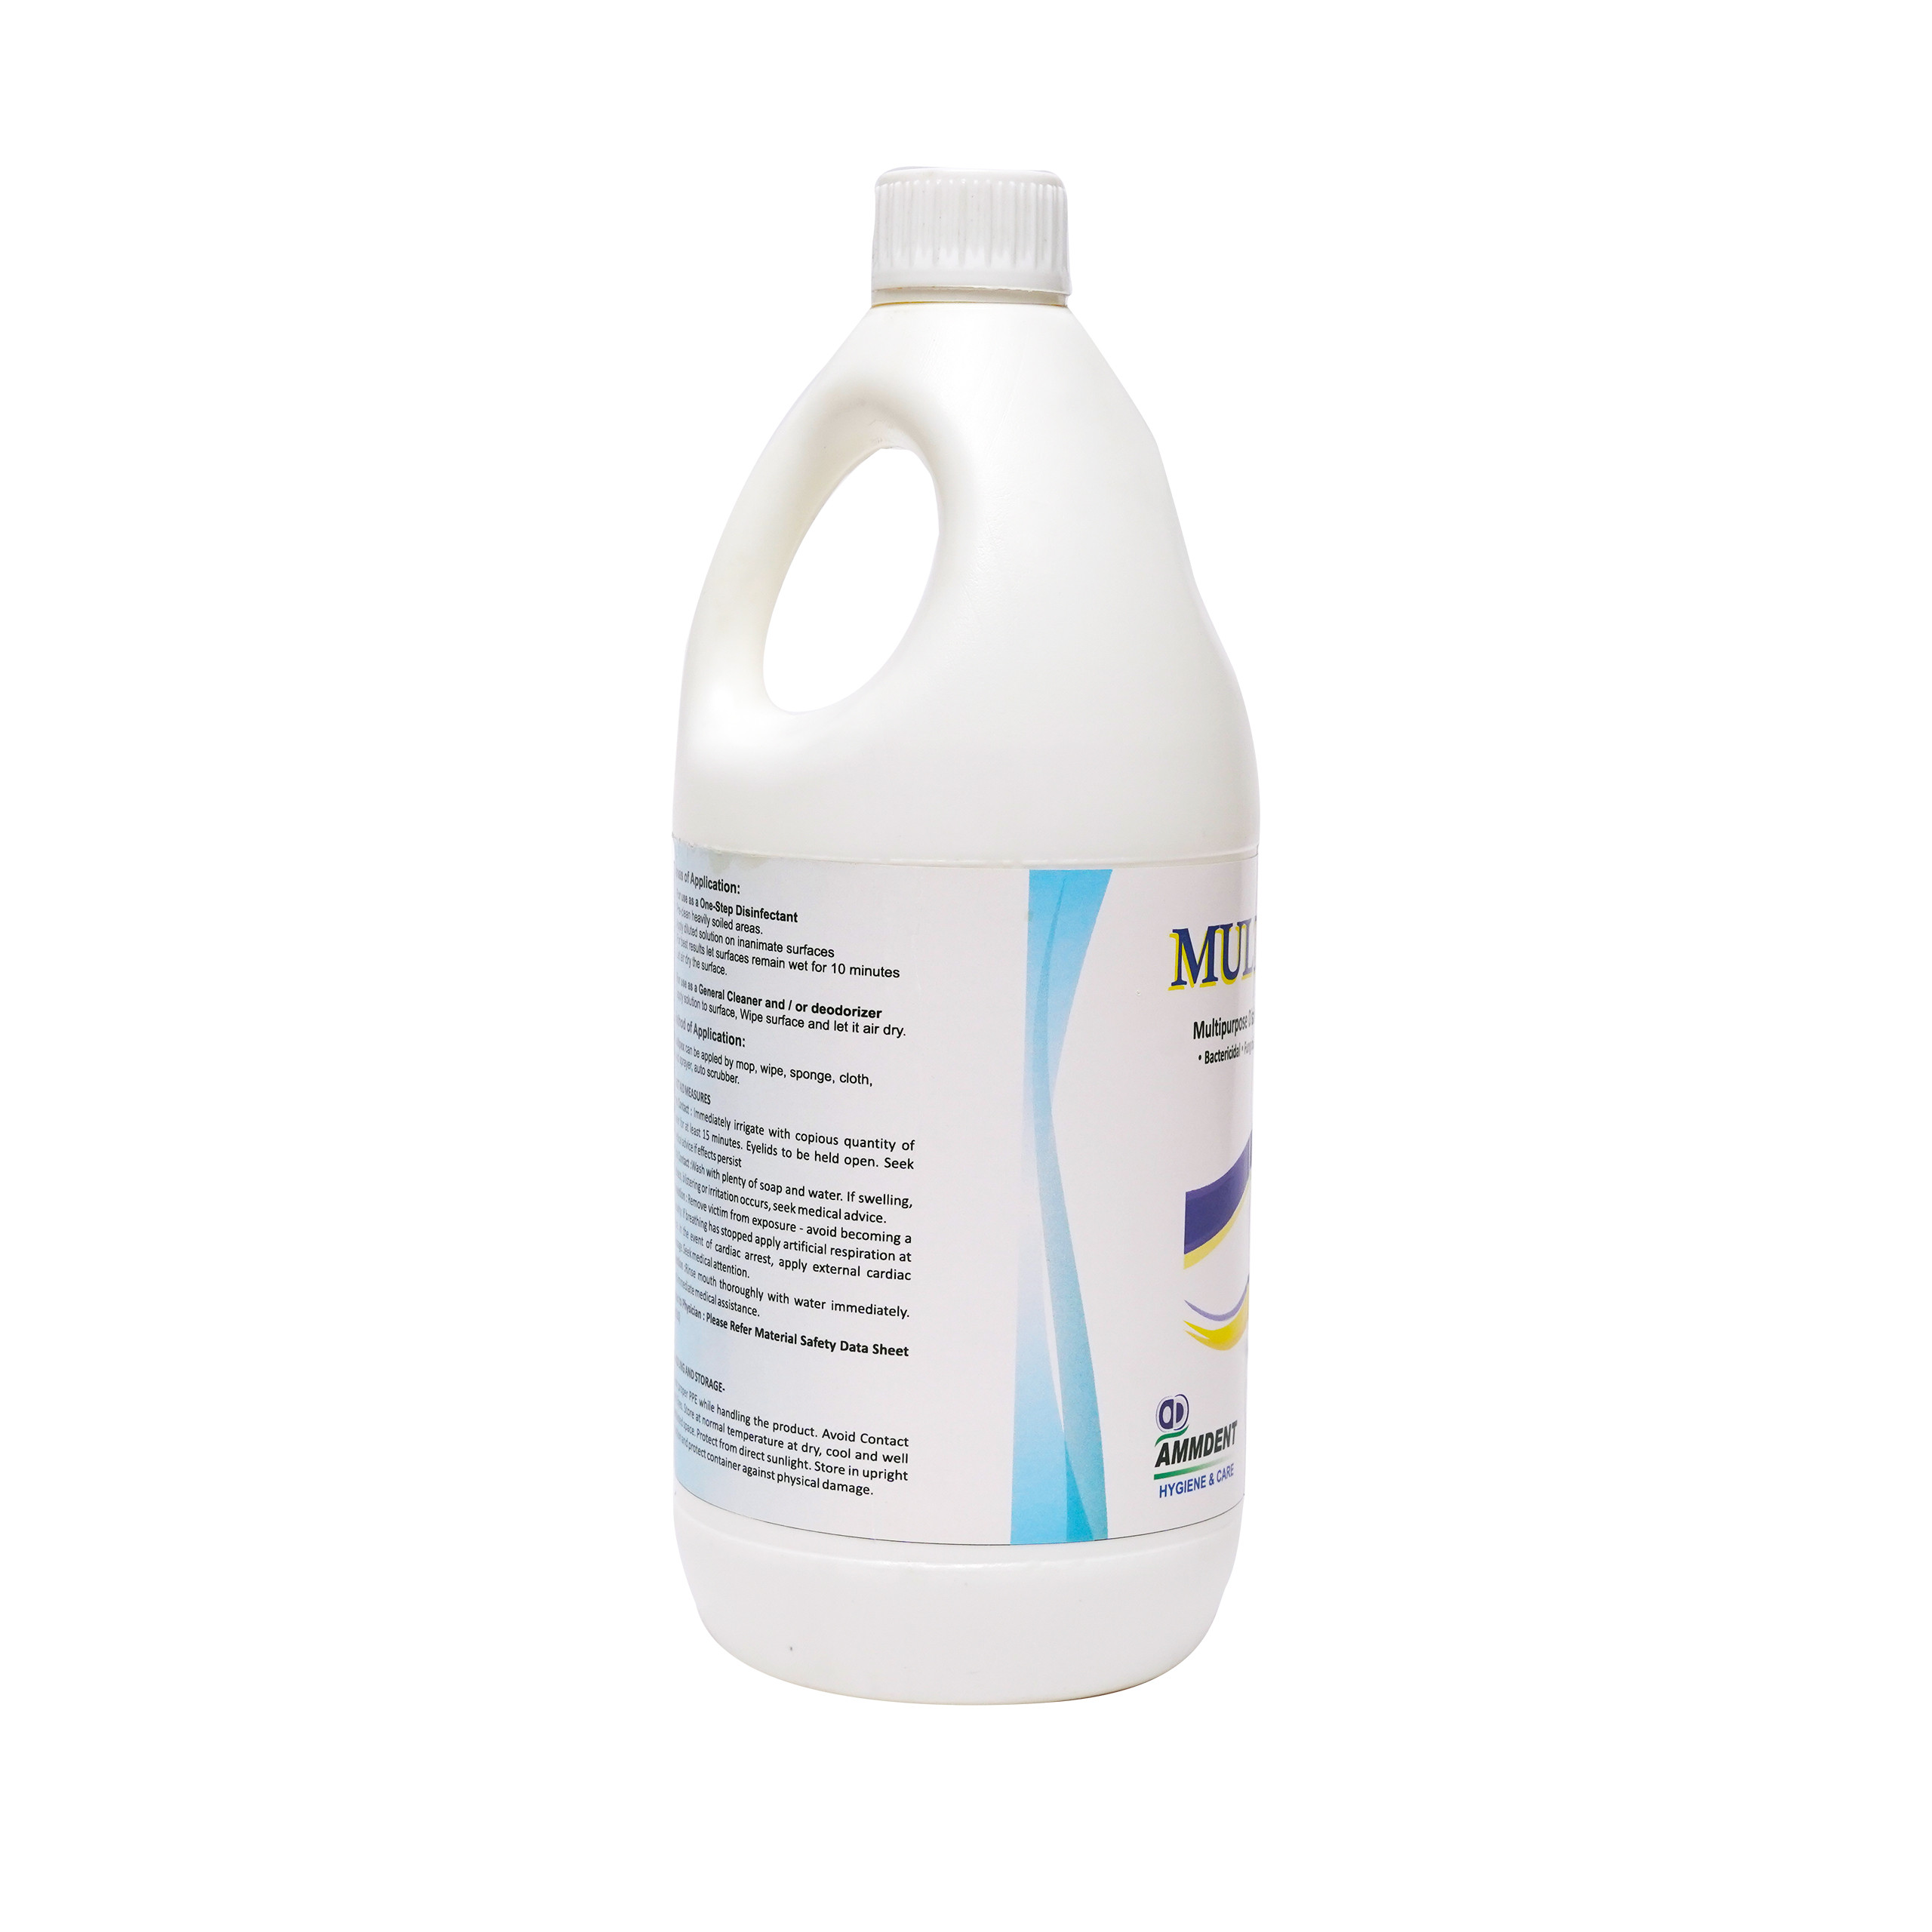 Multipex Multipurpose Disinfectant Concentrate